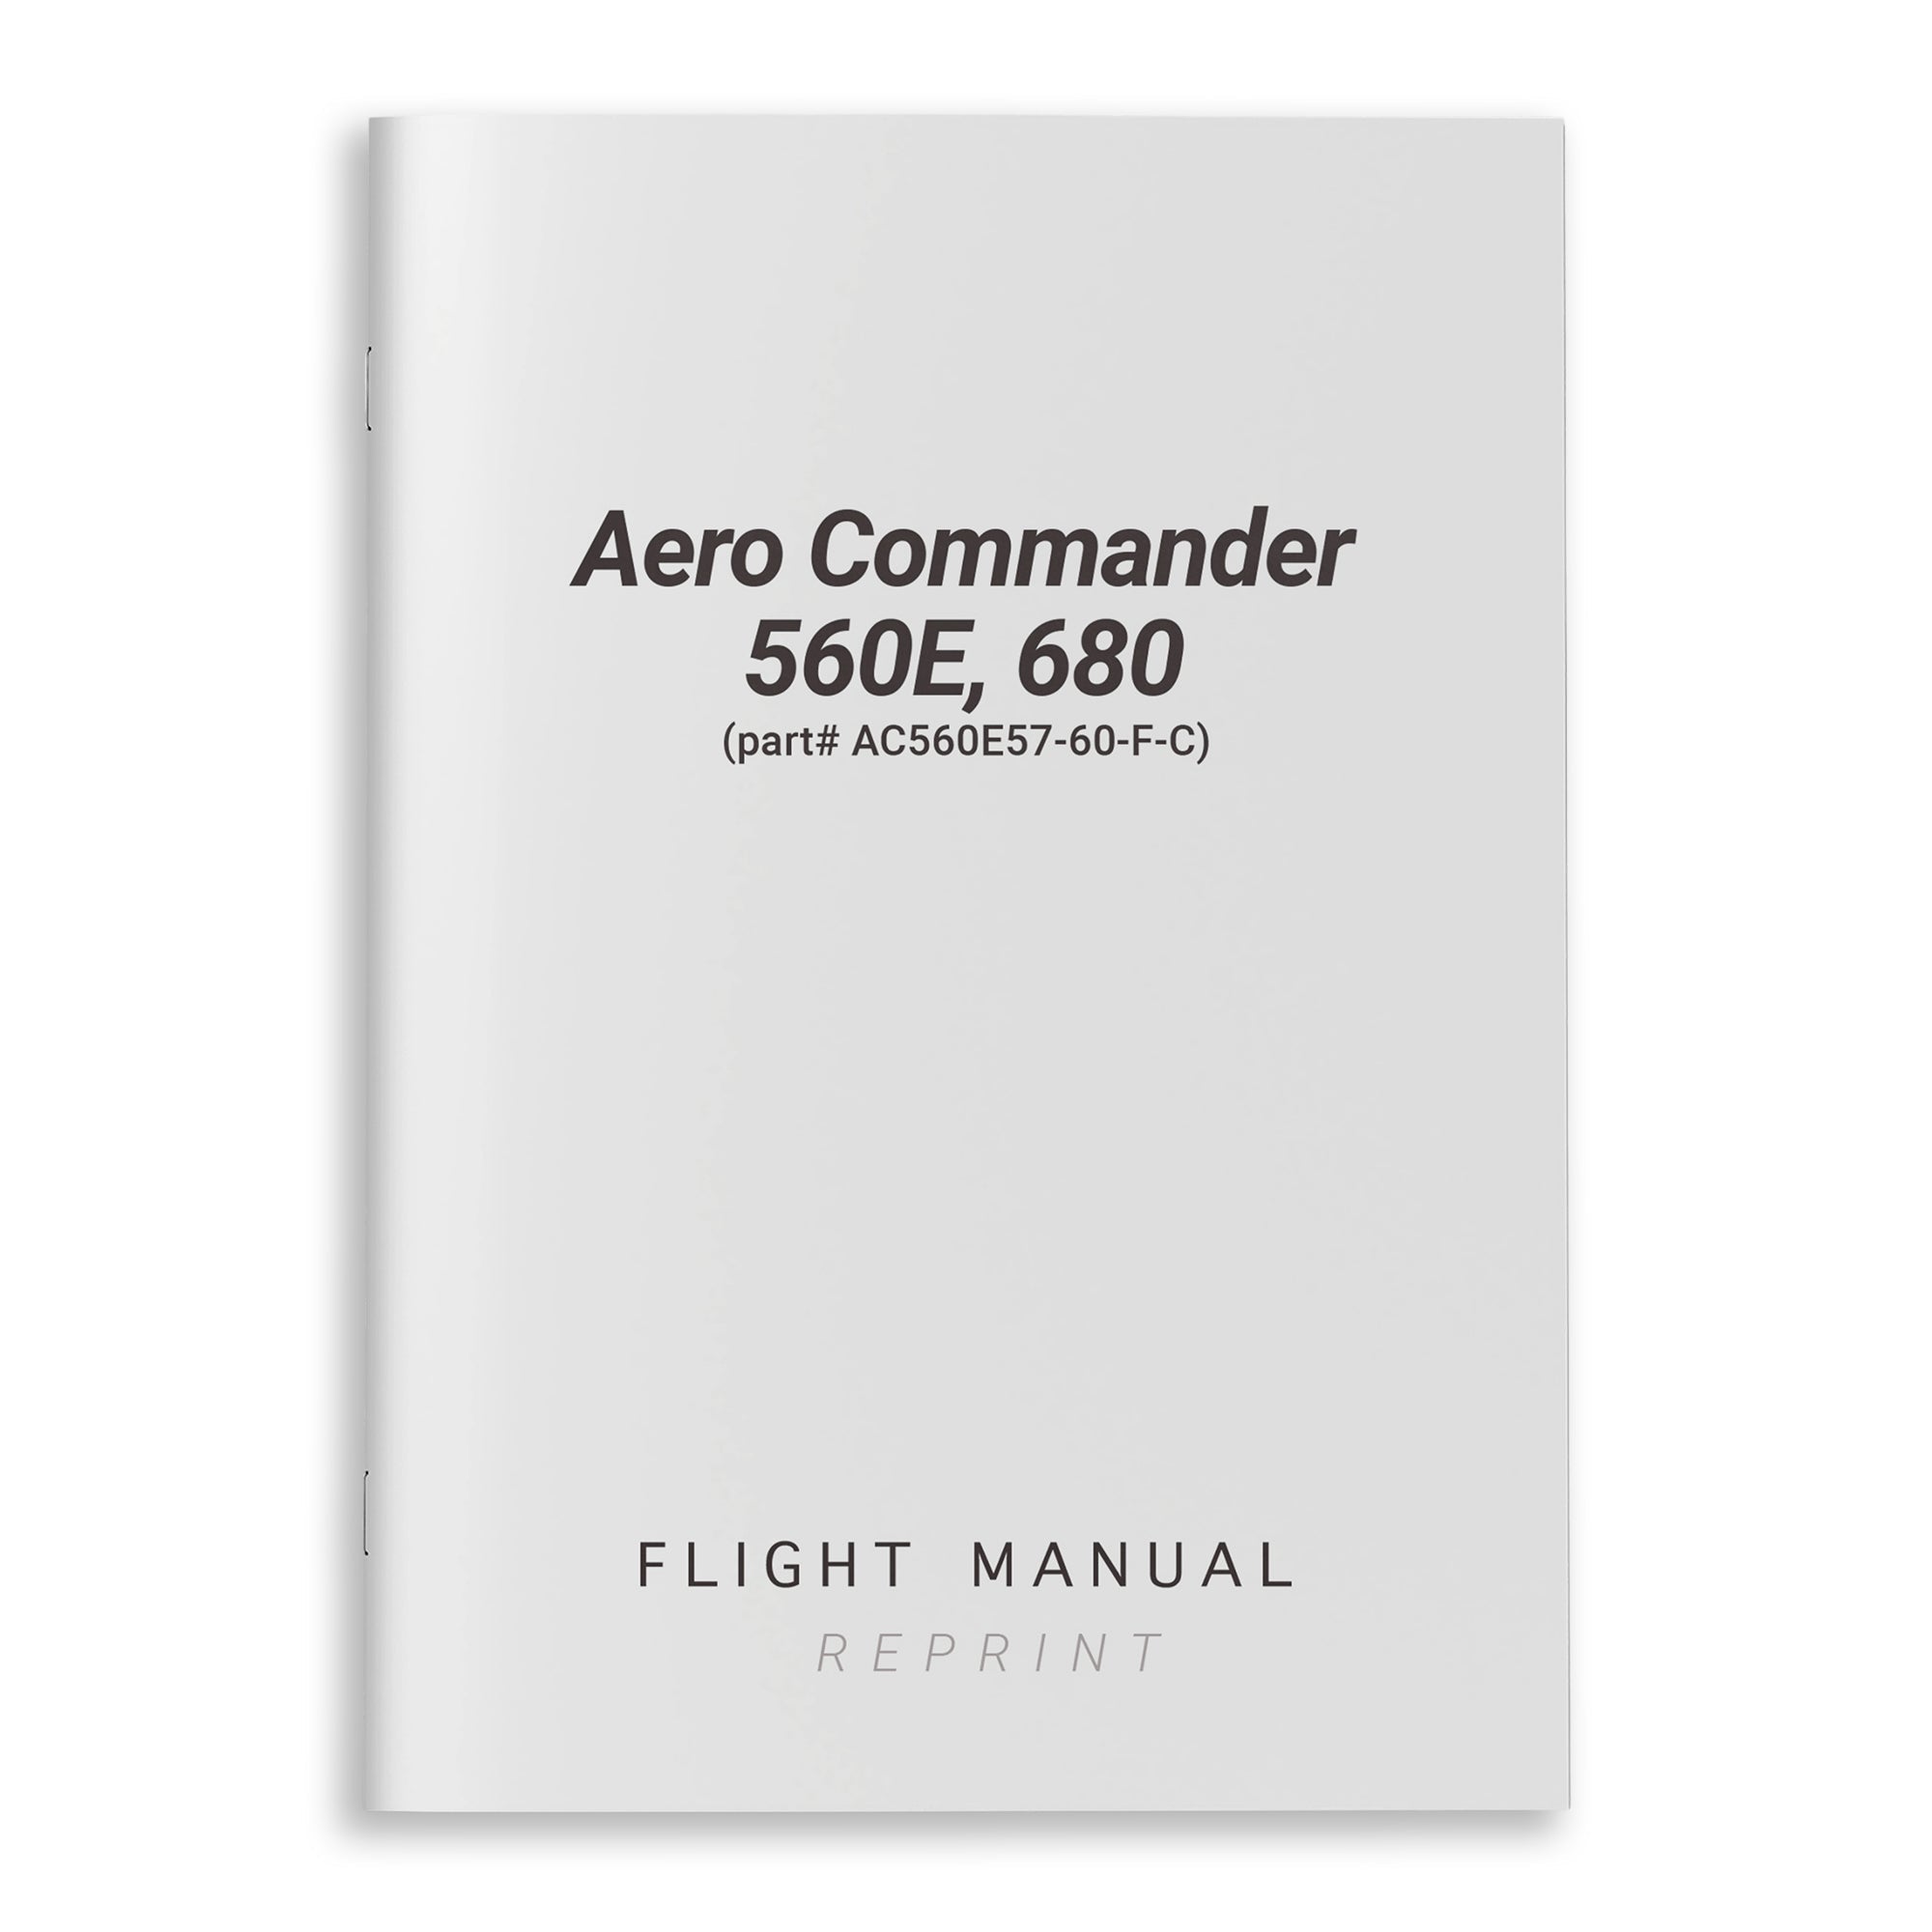 Aero Commander 560E, 680 Flight Manual (part# AC560E57-60-F-C) - PilotMall.com